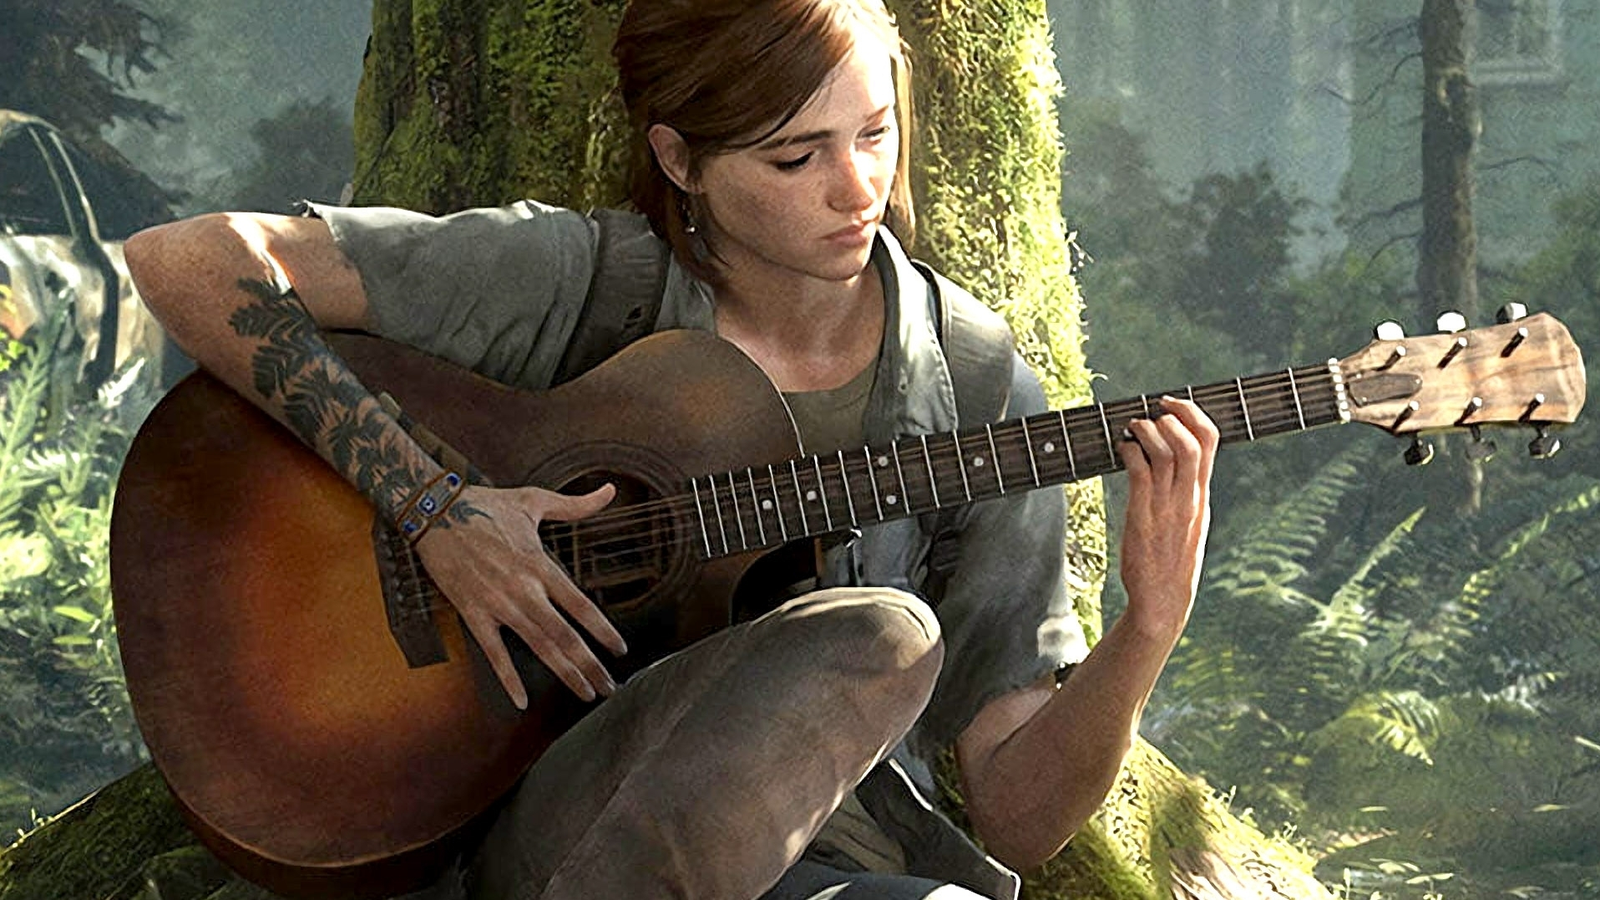 Ellie The Last of Us 2 4K Wallpaper #5.2487